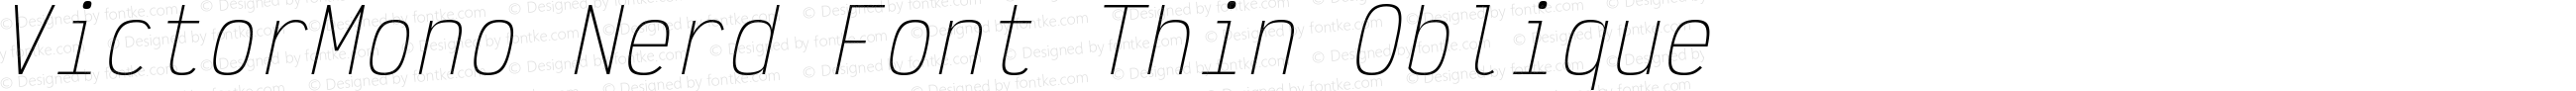 Victor Mono Thin Oblique Nerd Font Complete